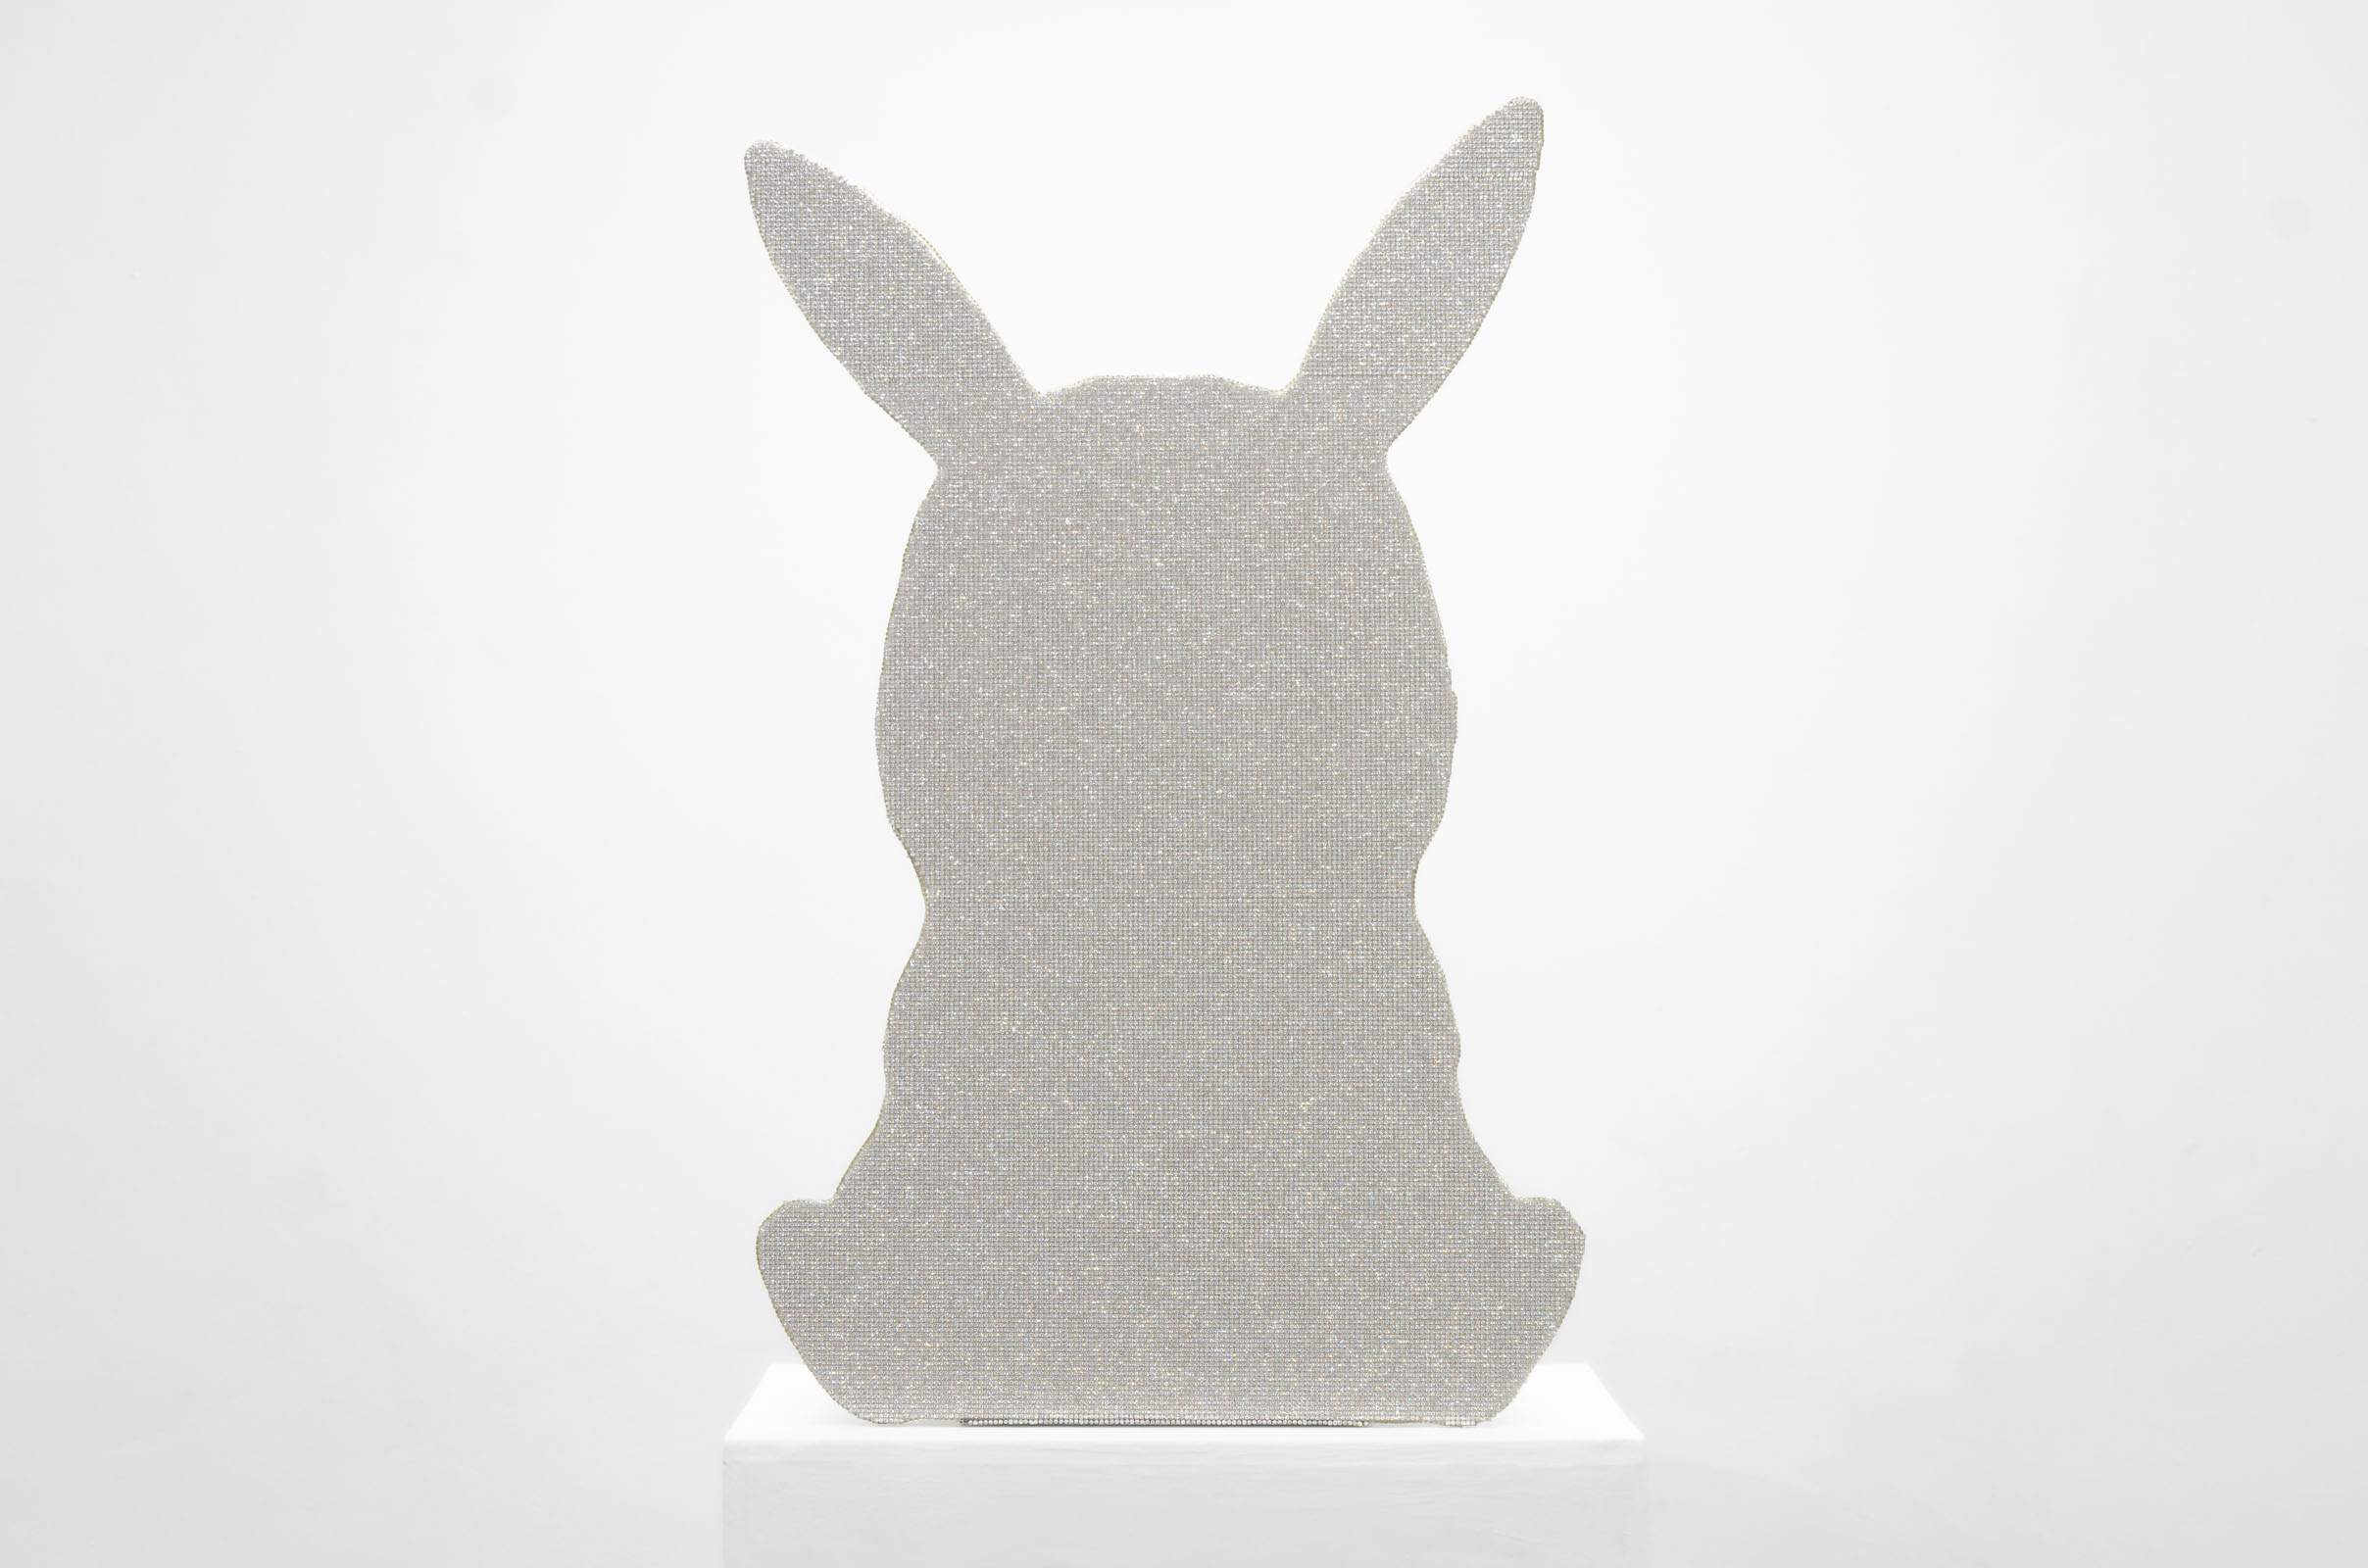 Christophe de Rohan Chabot: Pika - Bunny